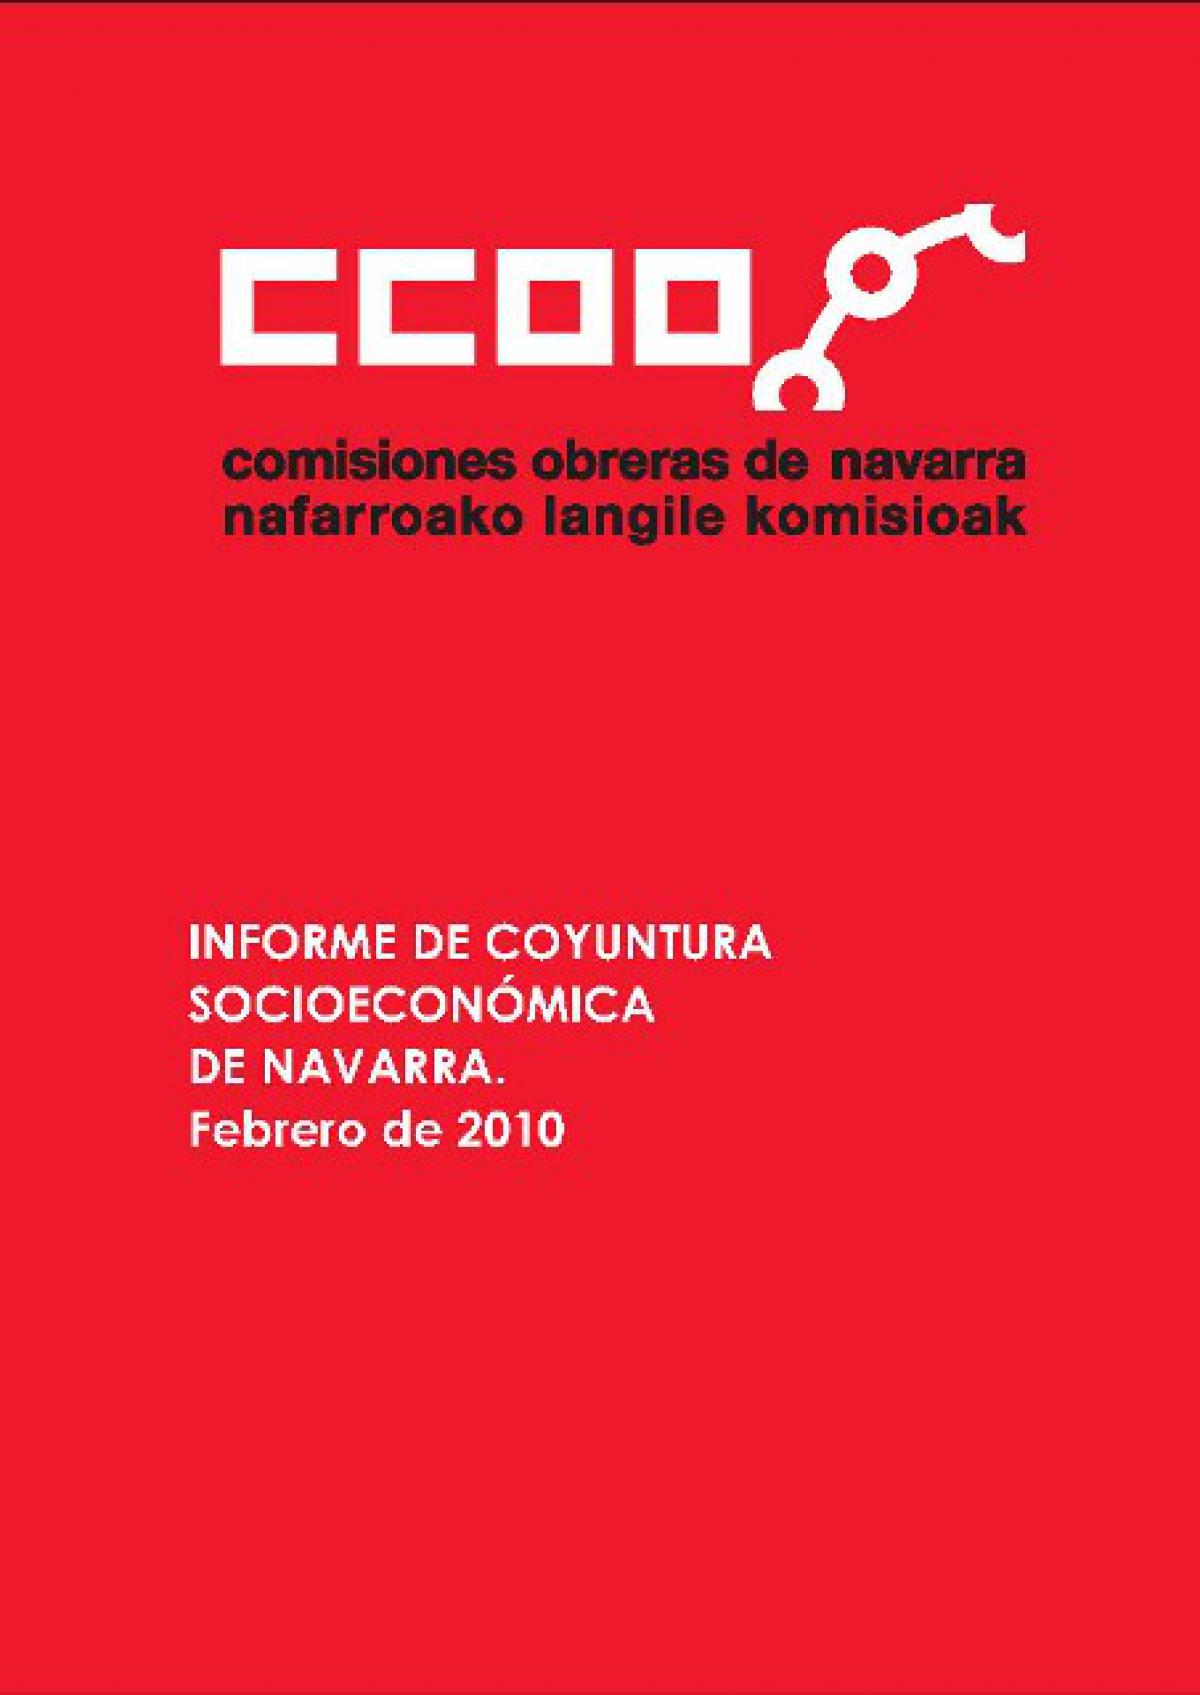 informe de coyuntura socioeconomica de navarra. febrero 2010